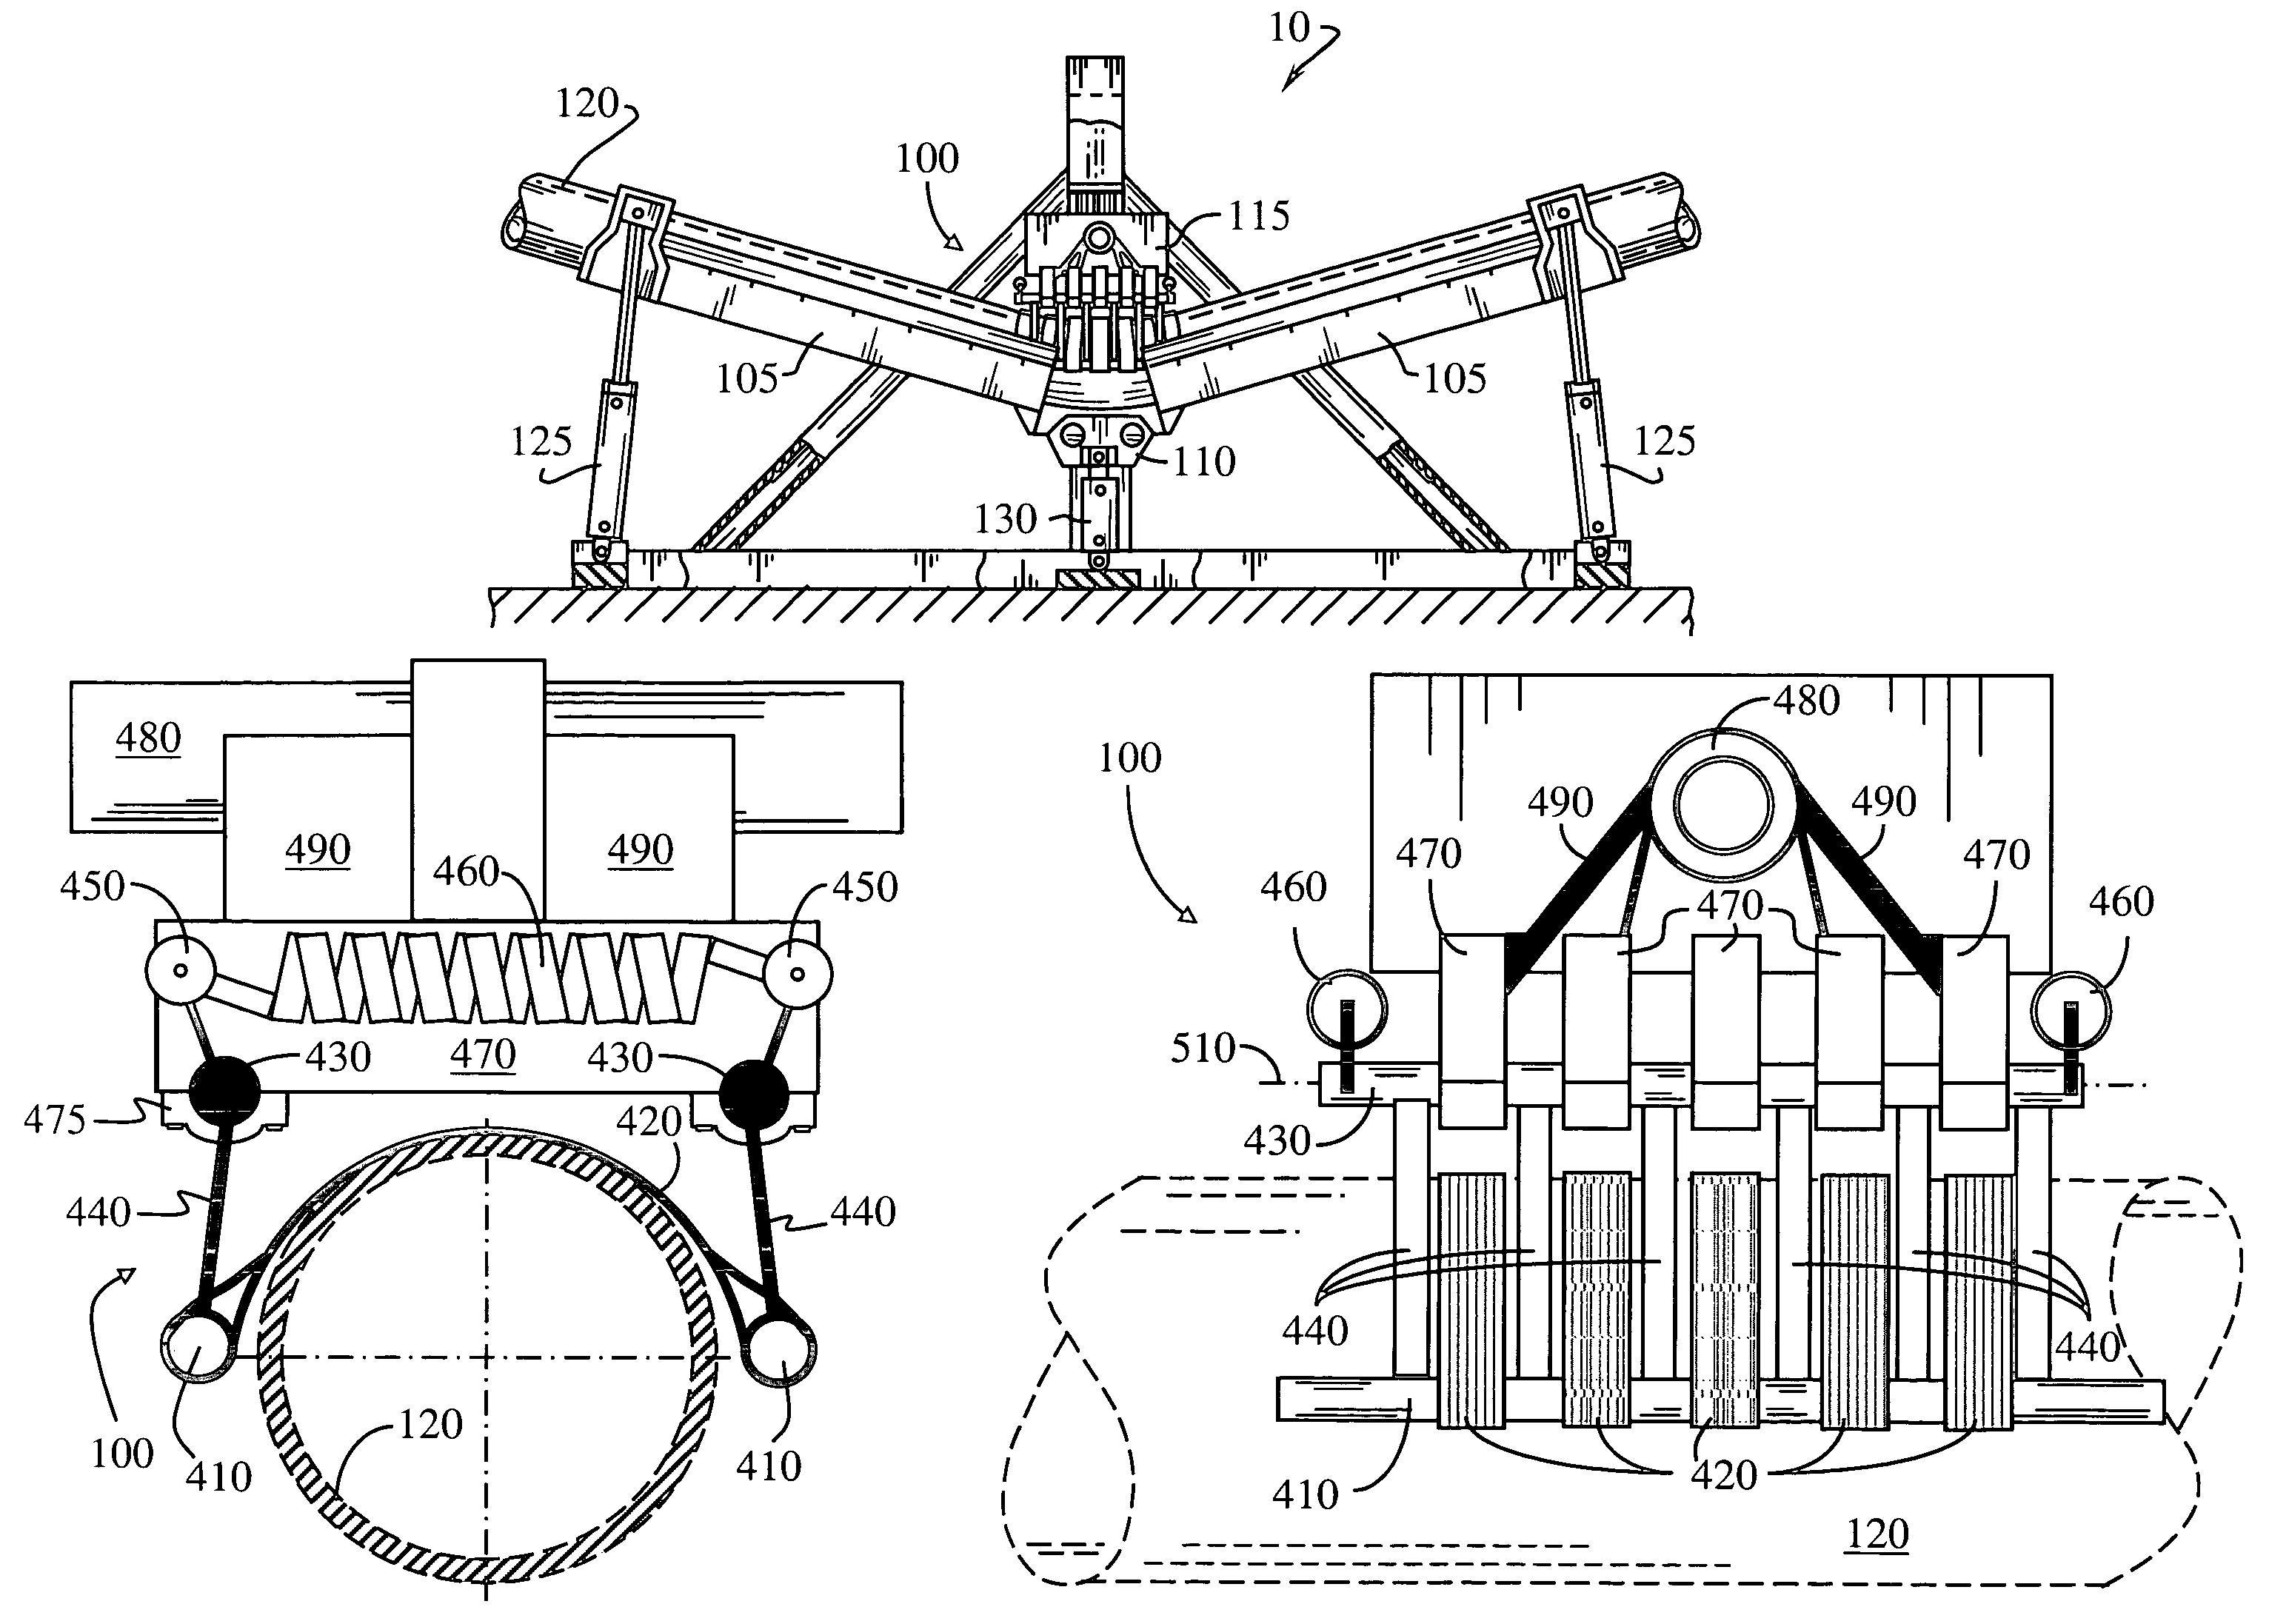 Pipe bending apparatus